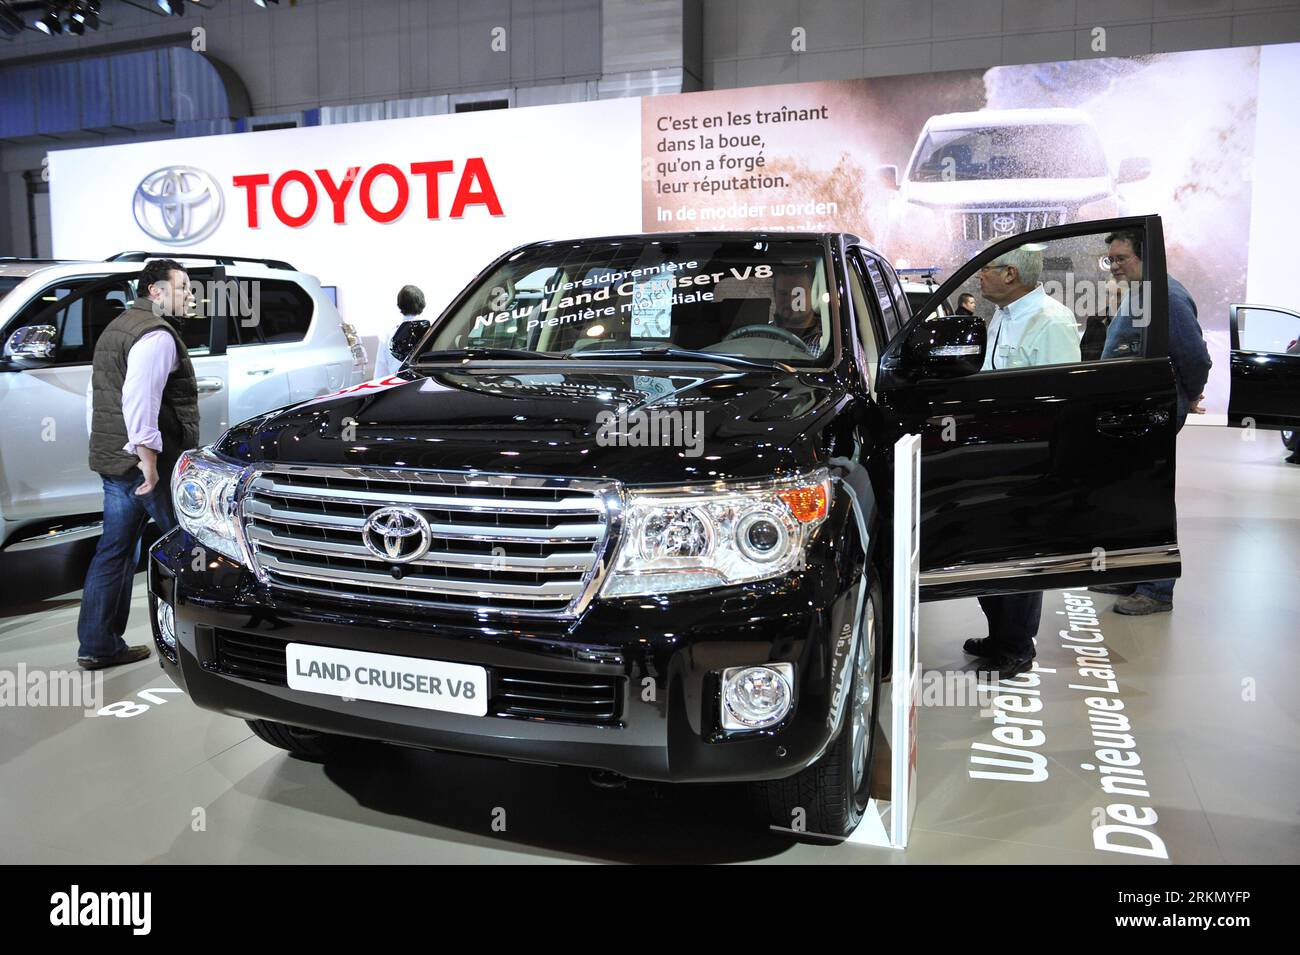 Toyota land cruiser v8 Banque de photographies et d'images à haute